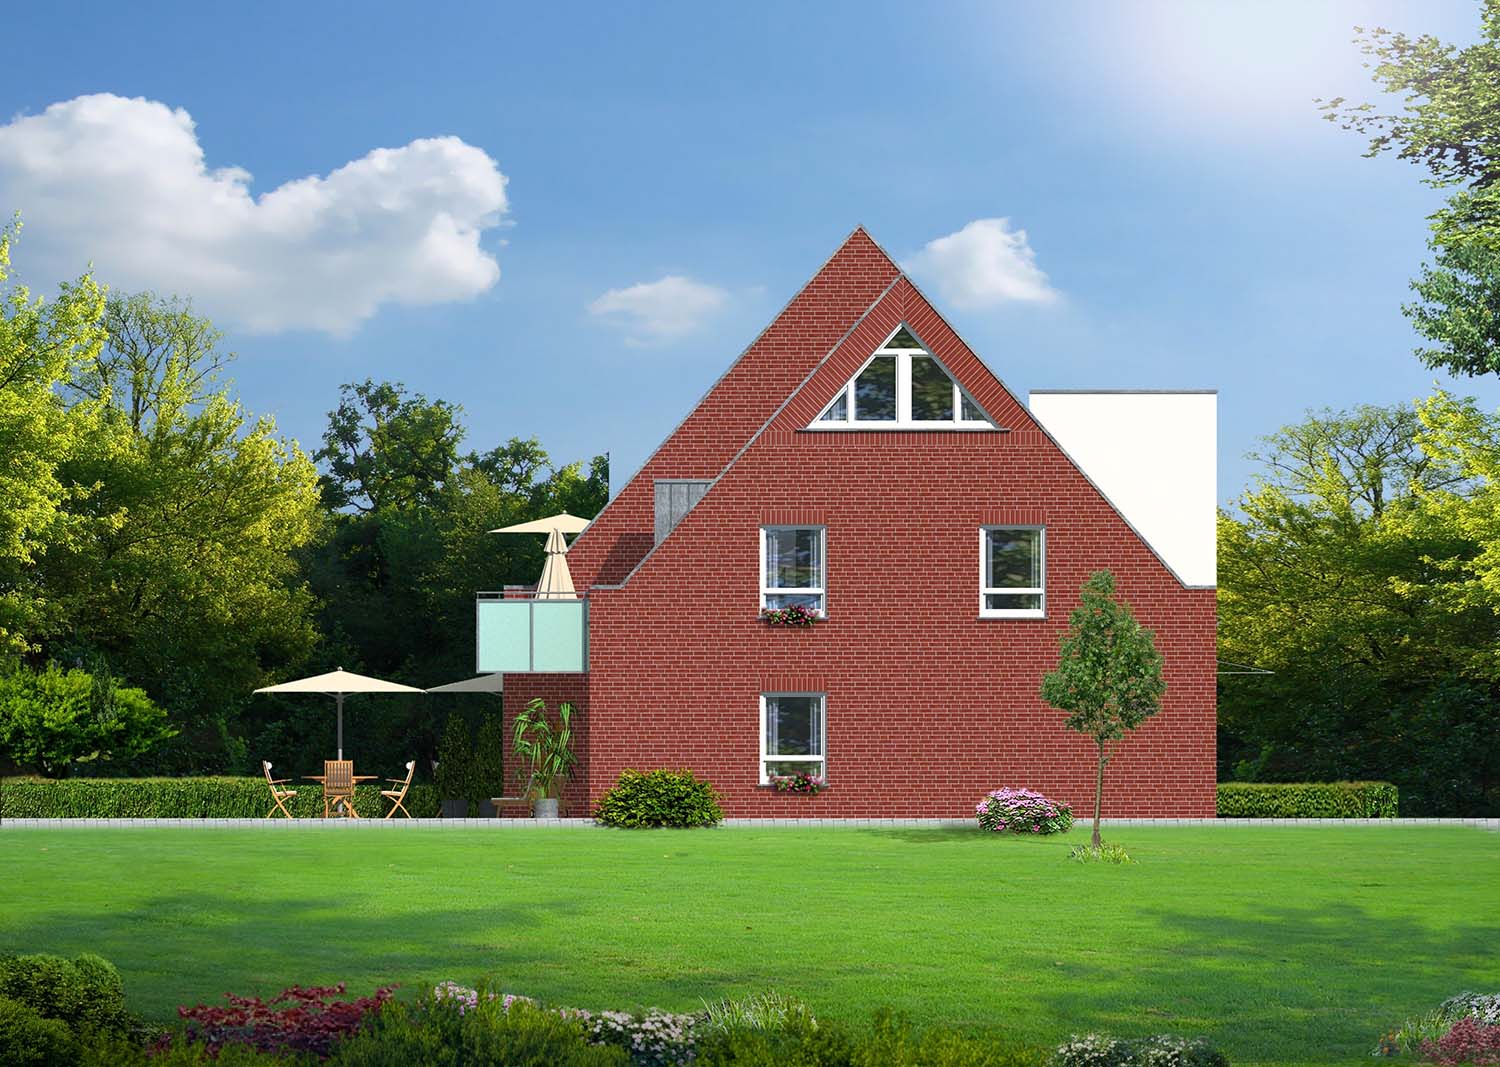 2,5D Architektur-Aufmaß der Nord-Ost-Ansicht des Neubaus eines 4-Familien Wohnhauses in Lüdinghausen, Tüllinghofer Str.3, erstellt für H+F Hilbers-Bau und Handelsges. mbH & Co. KG Oststraße 6, 48301 Nottuln (Jahr 2013)